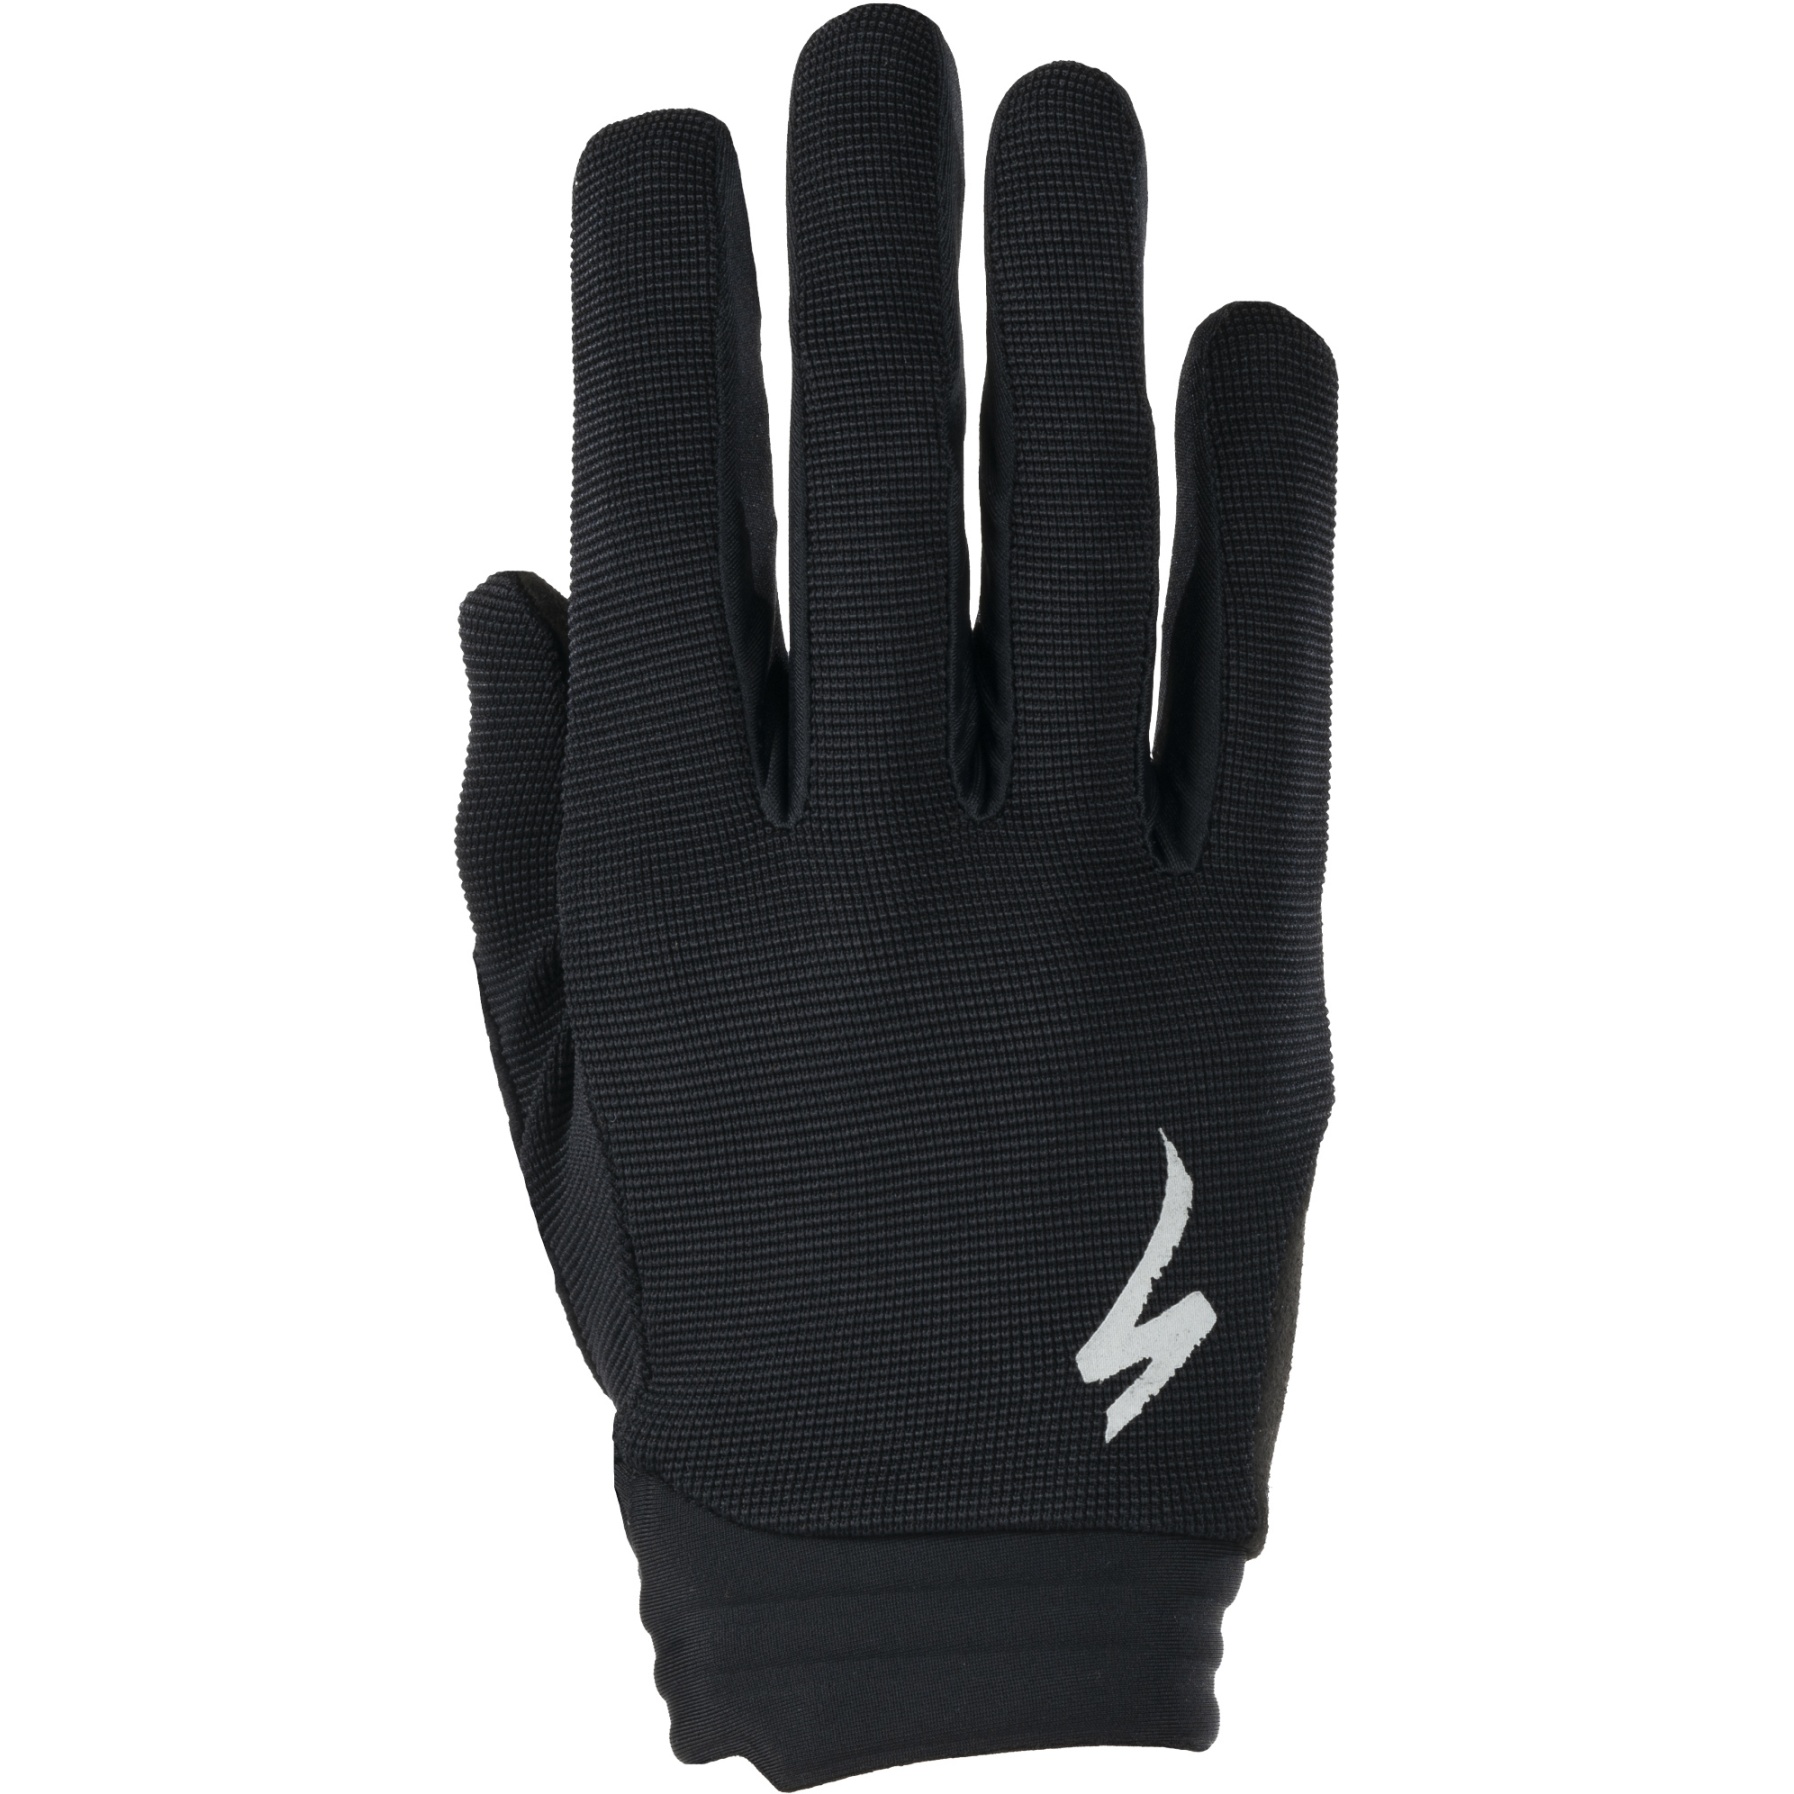 Productfoto van Specialized Trail LF Handschoenen - zwart